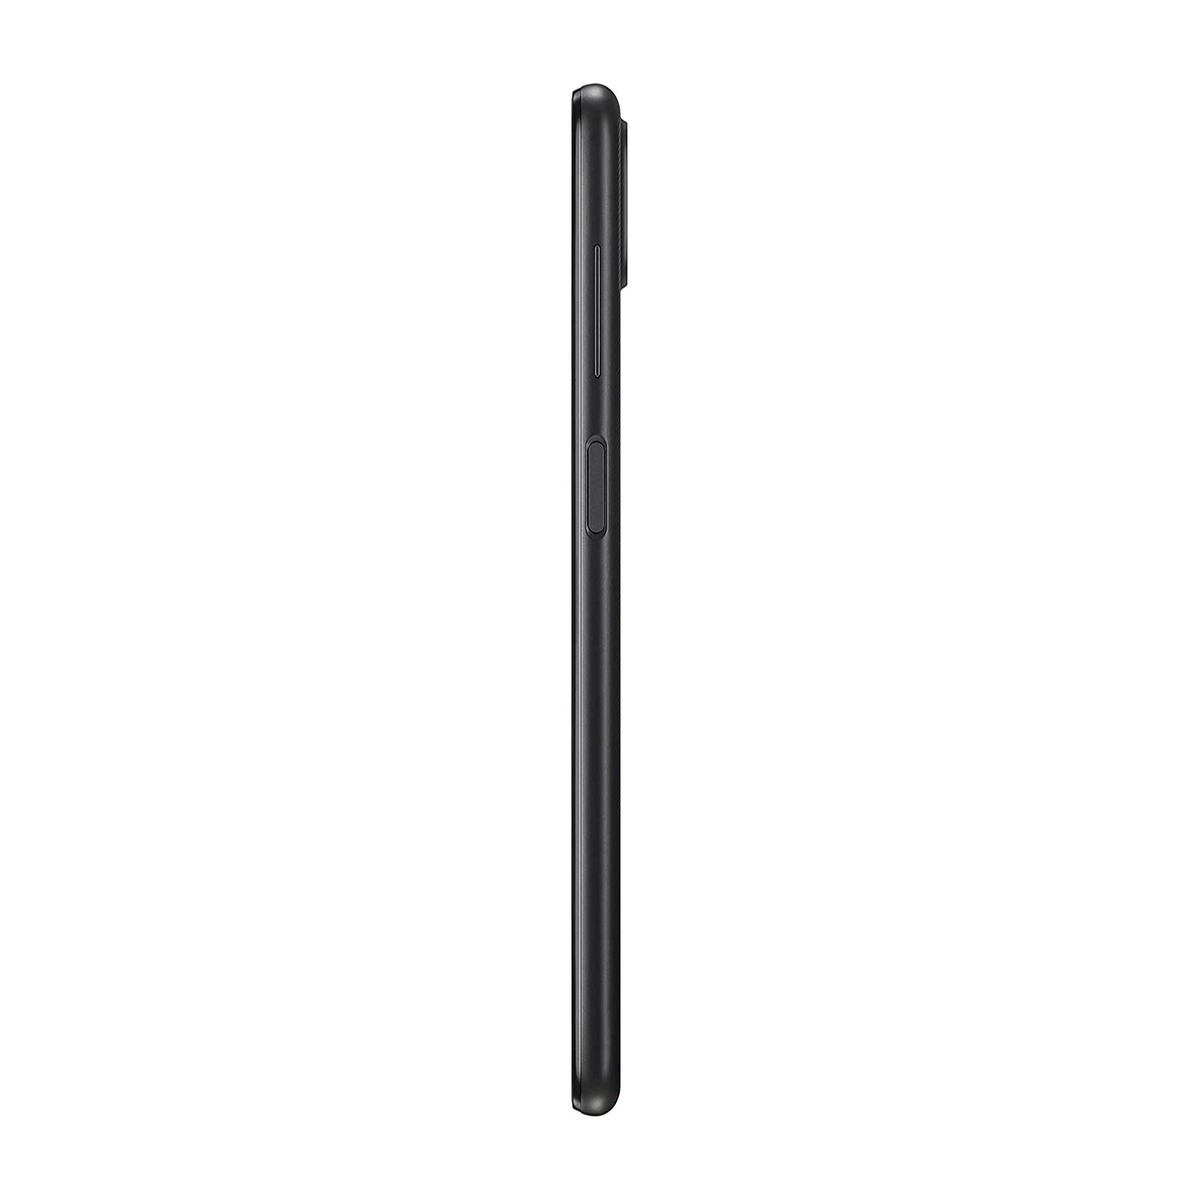 Samsung Galaxy A12-SMA127FZ 64GB Black